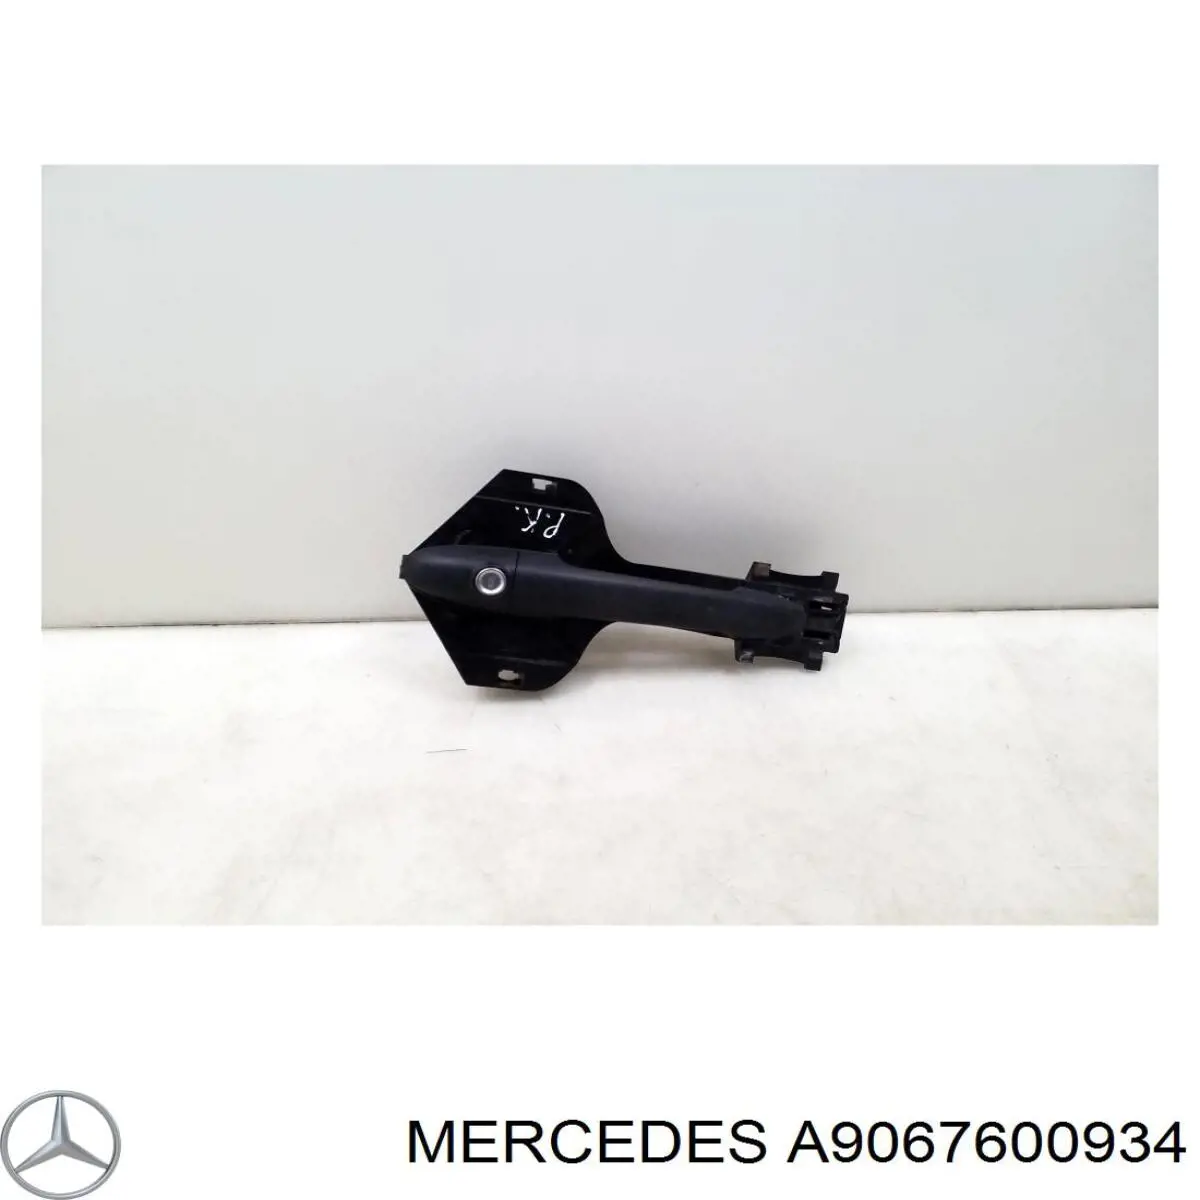 A9067600934 Mercedes suporte de maçaneta externa da porta dianteira esquerda